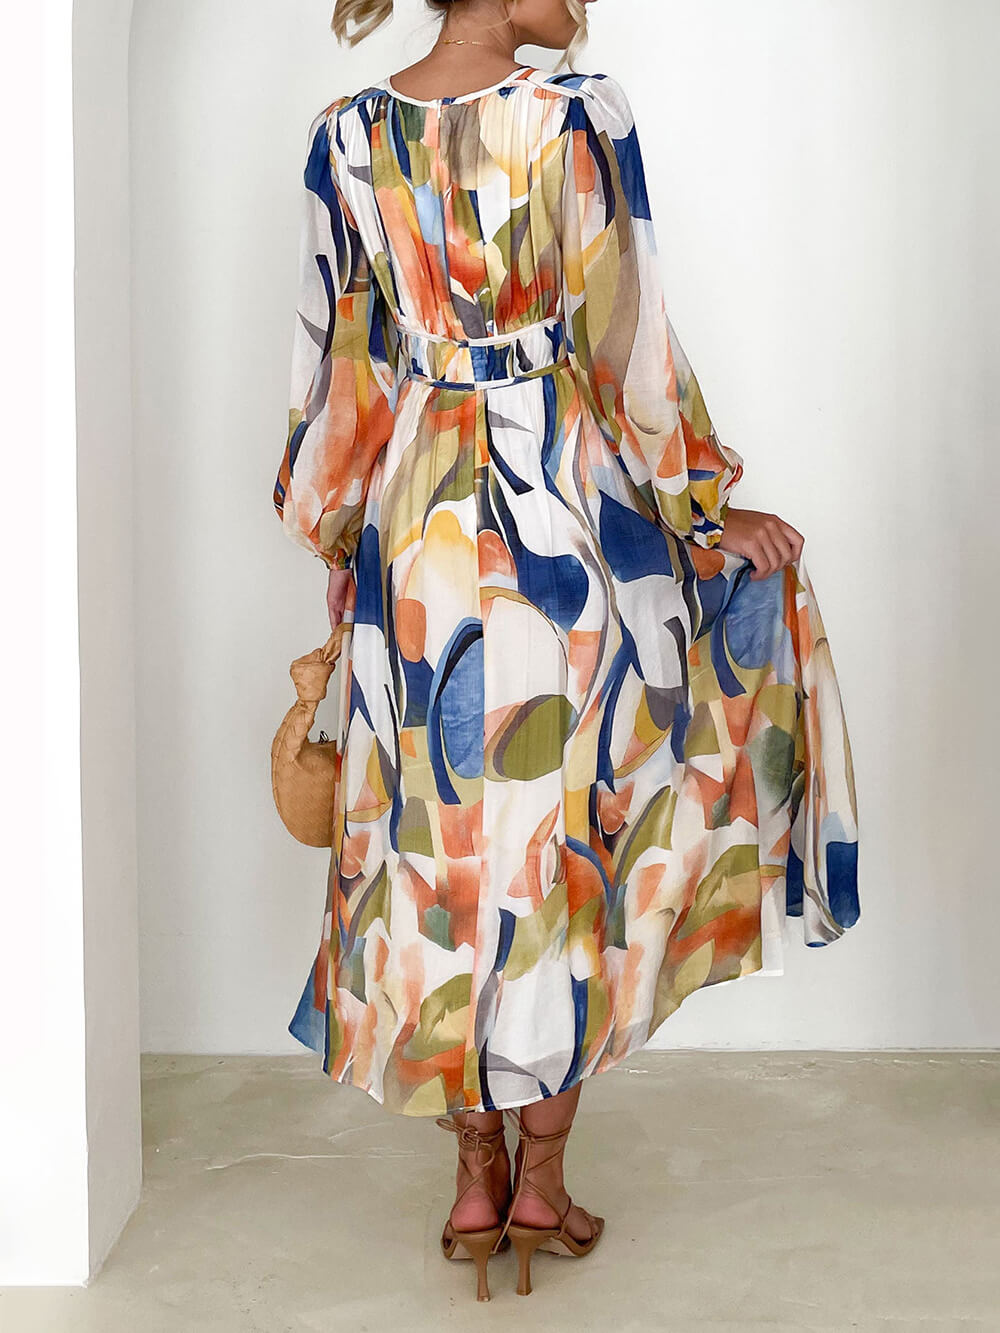 שמלת מקסי בדוגמה גיאומטרית צבעונית